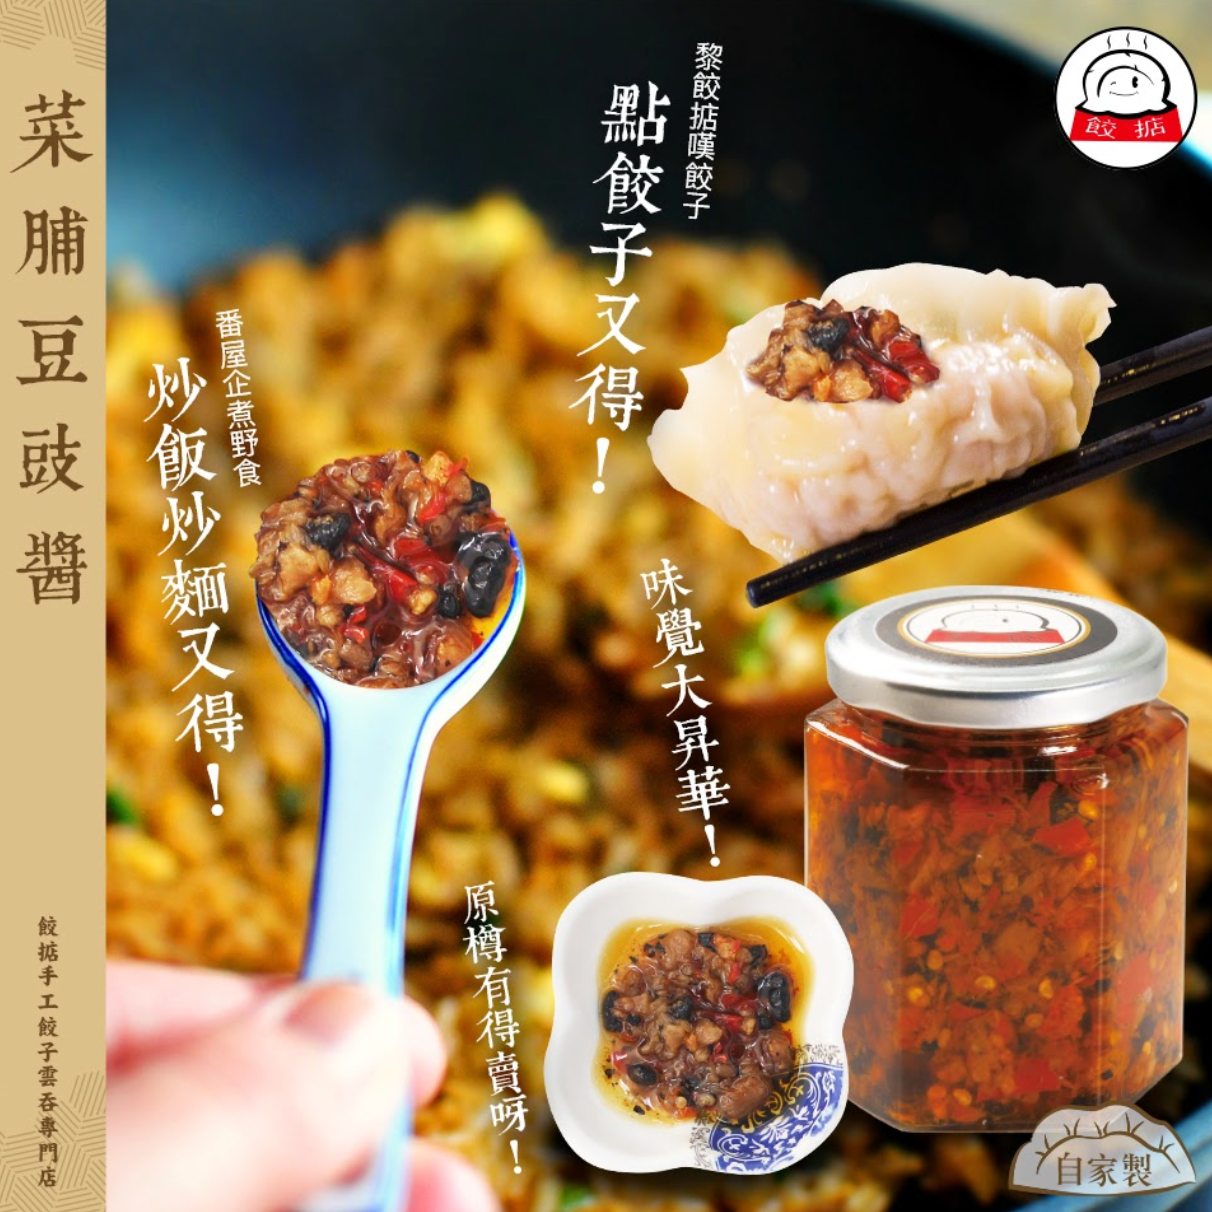 菜脯豆豉辣醬  Dried radish and ground bean spicy sauce 180ml